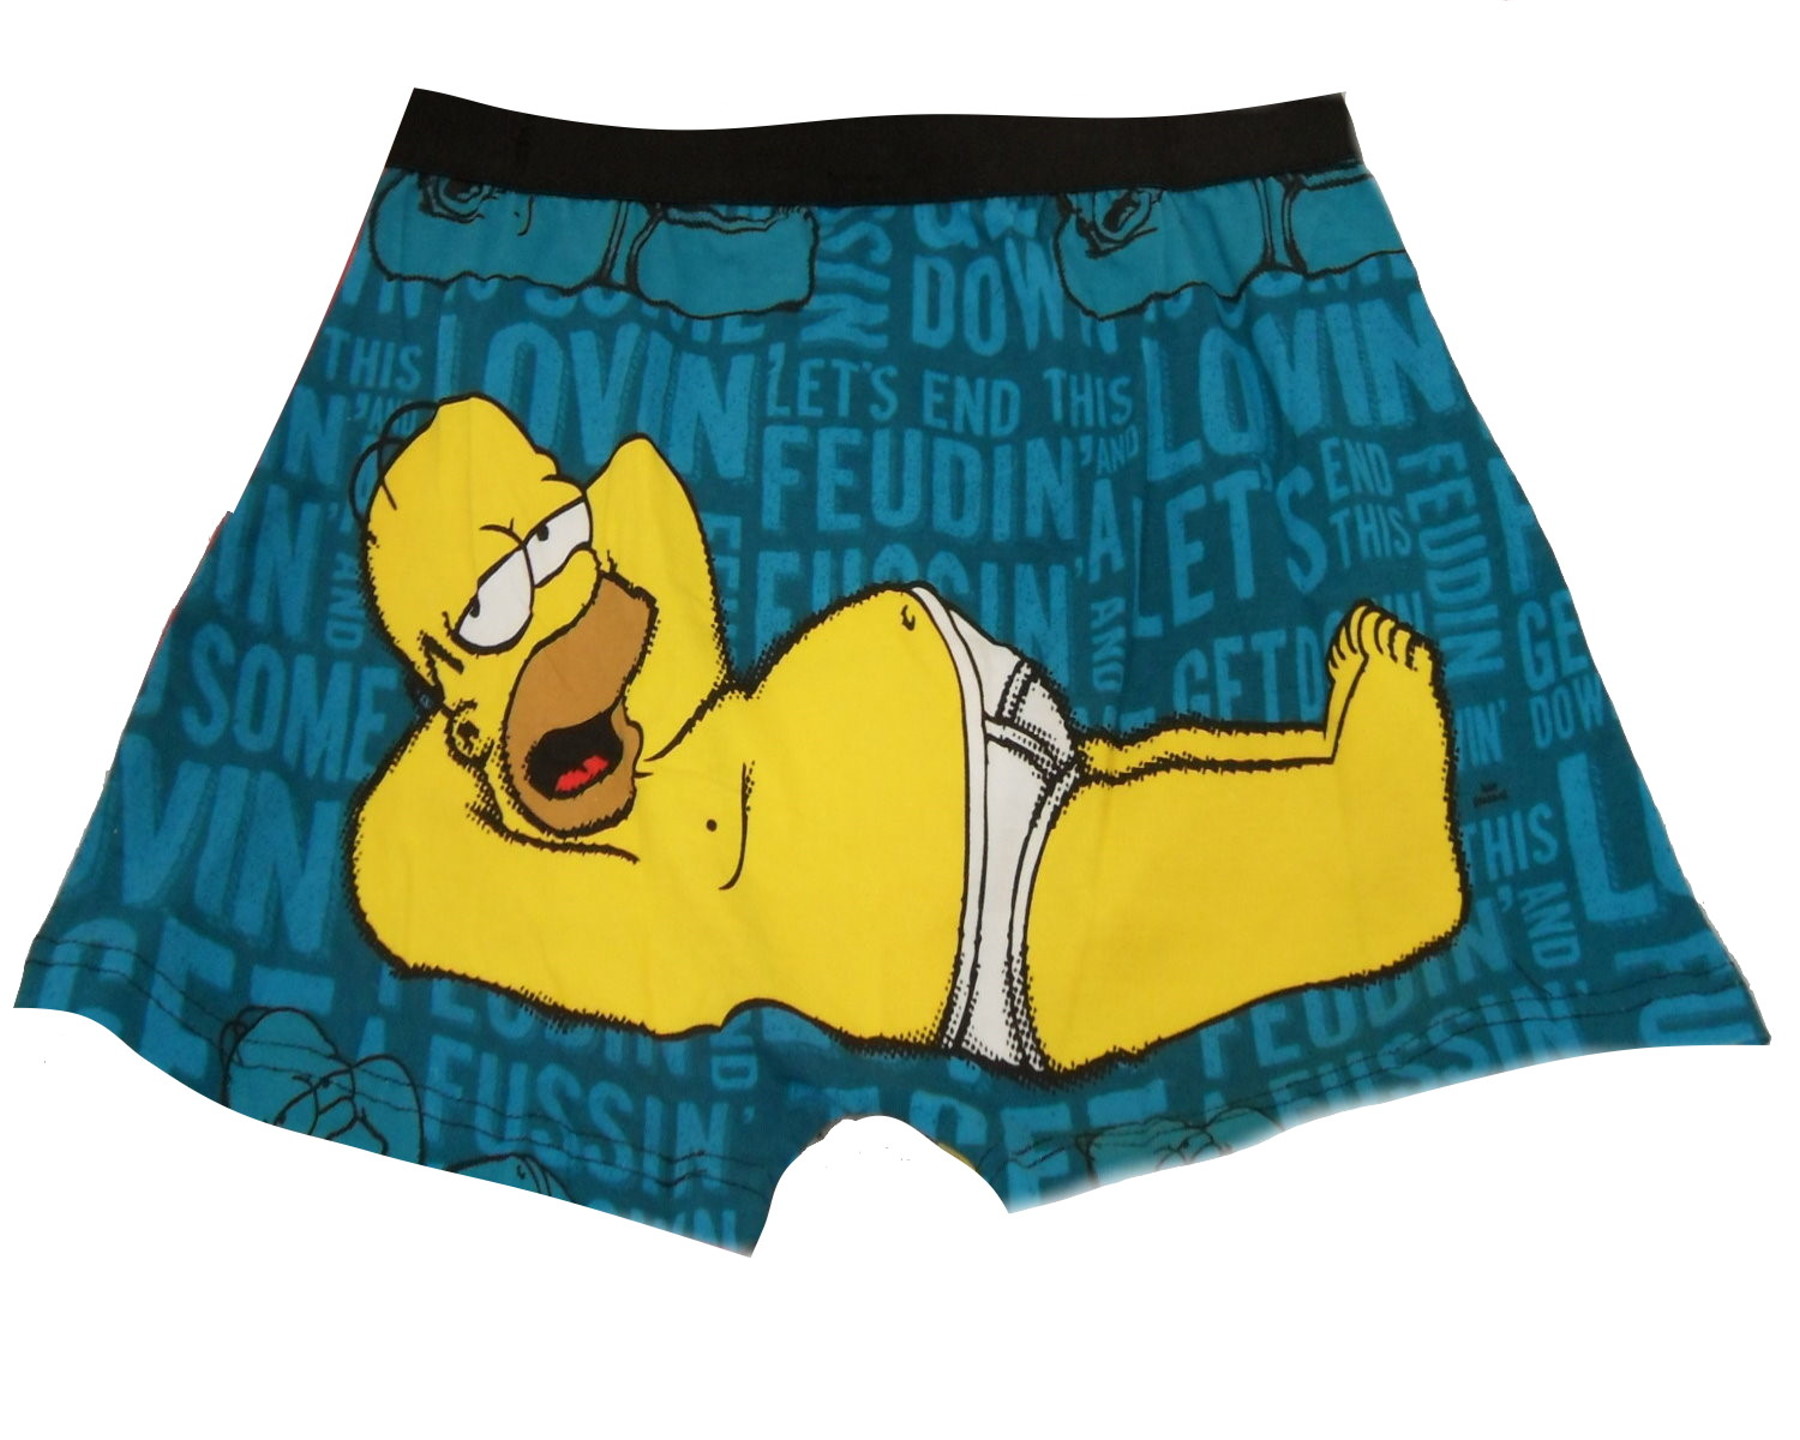 MUW02 Simpsons Boxer Shorts.JPG  by Thingimijigs